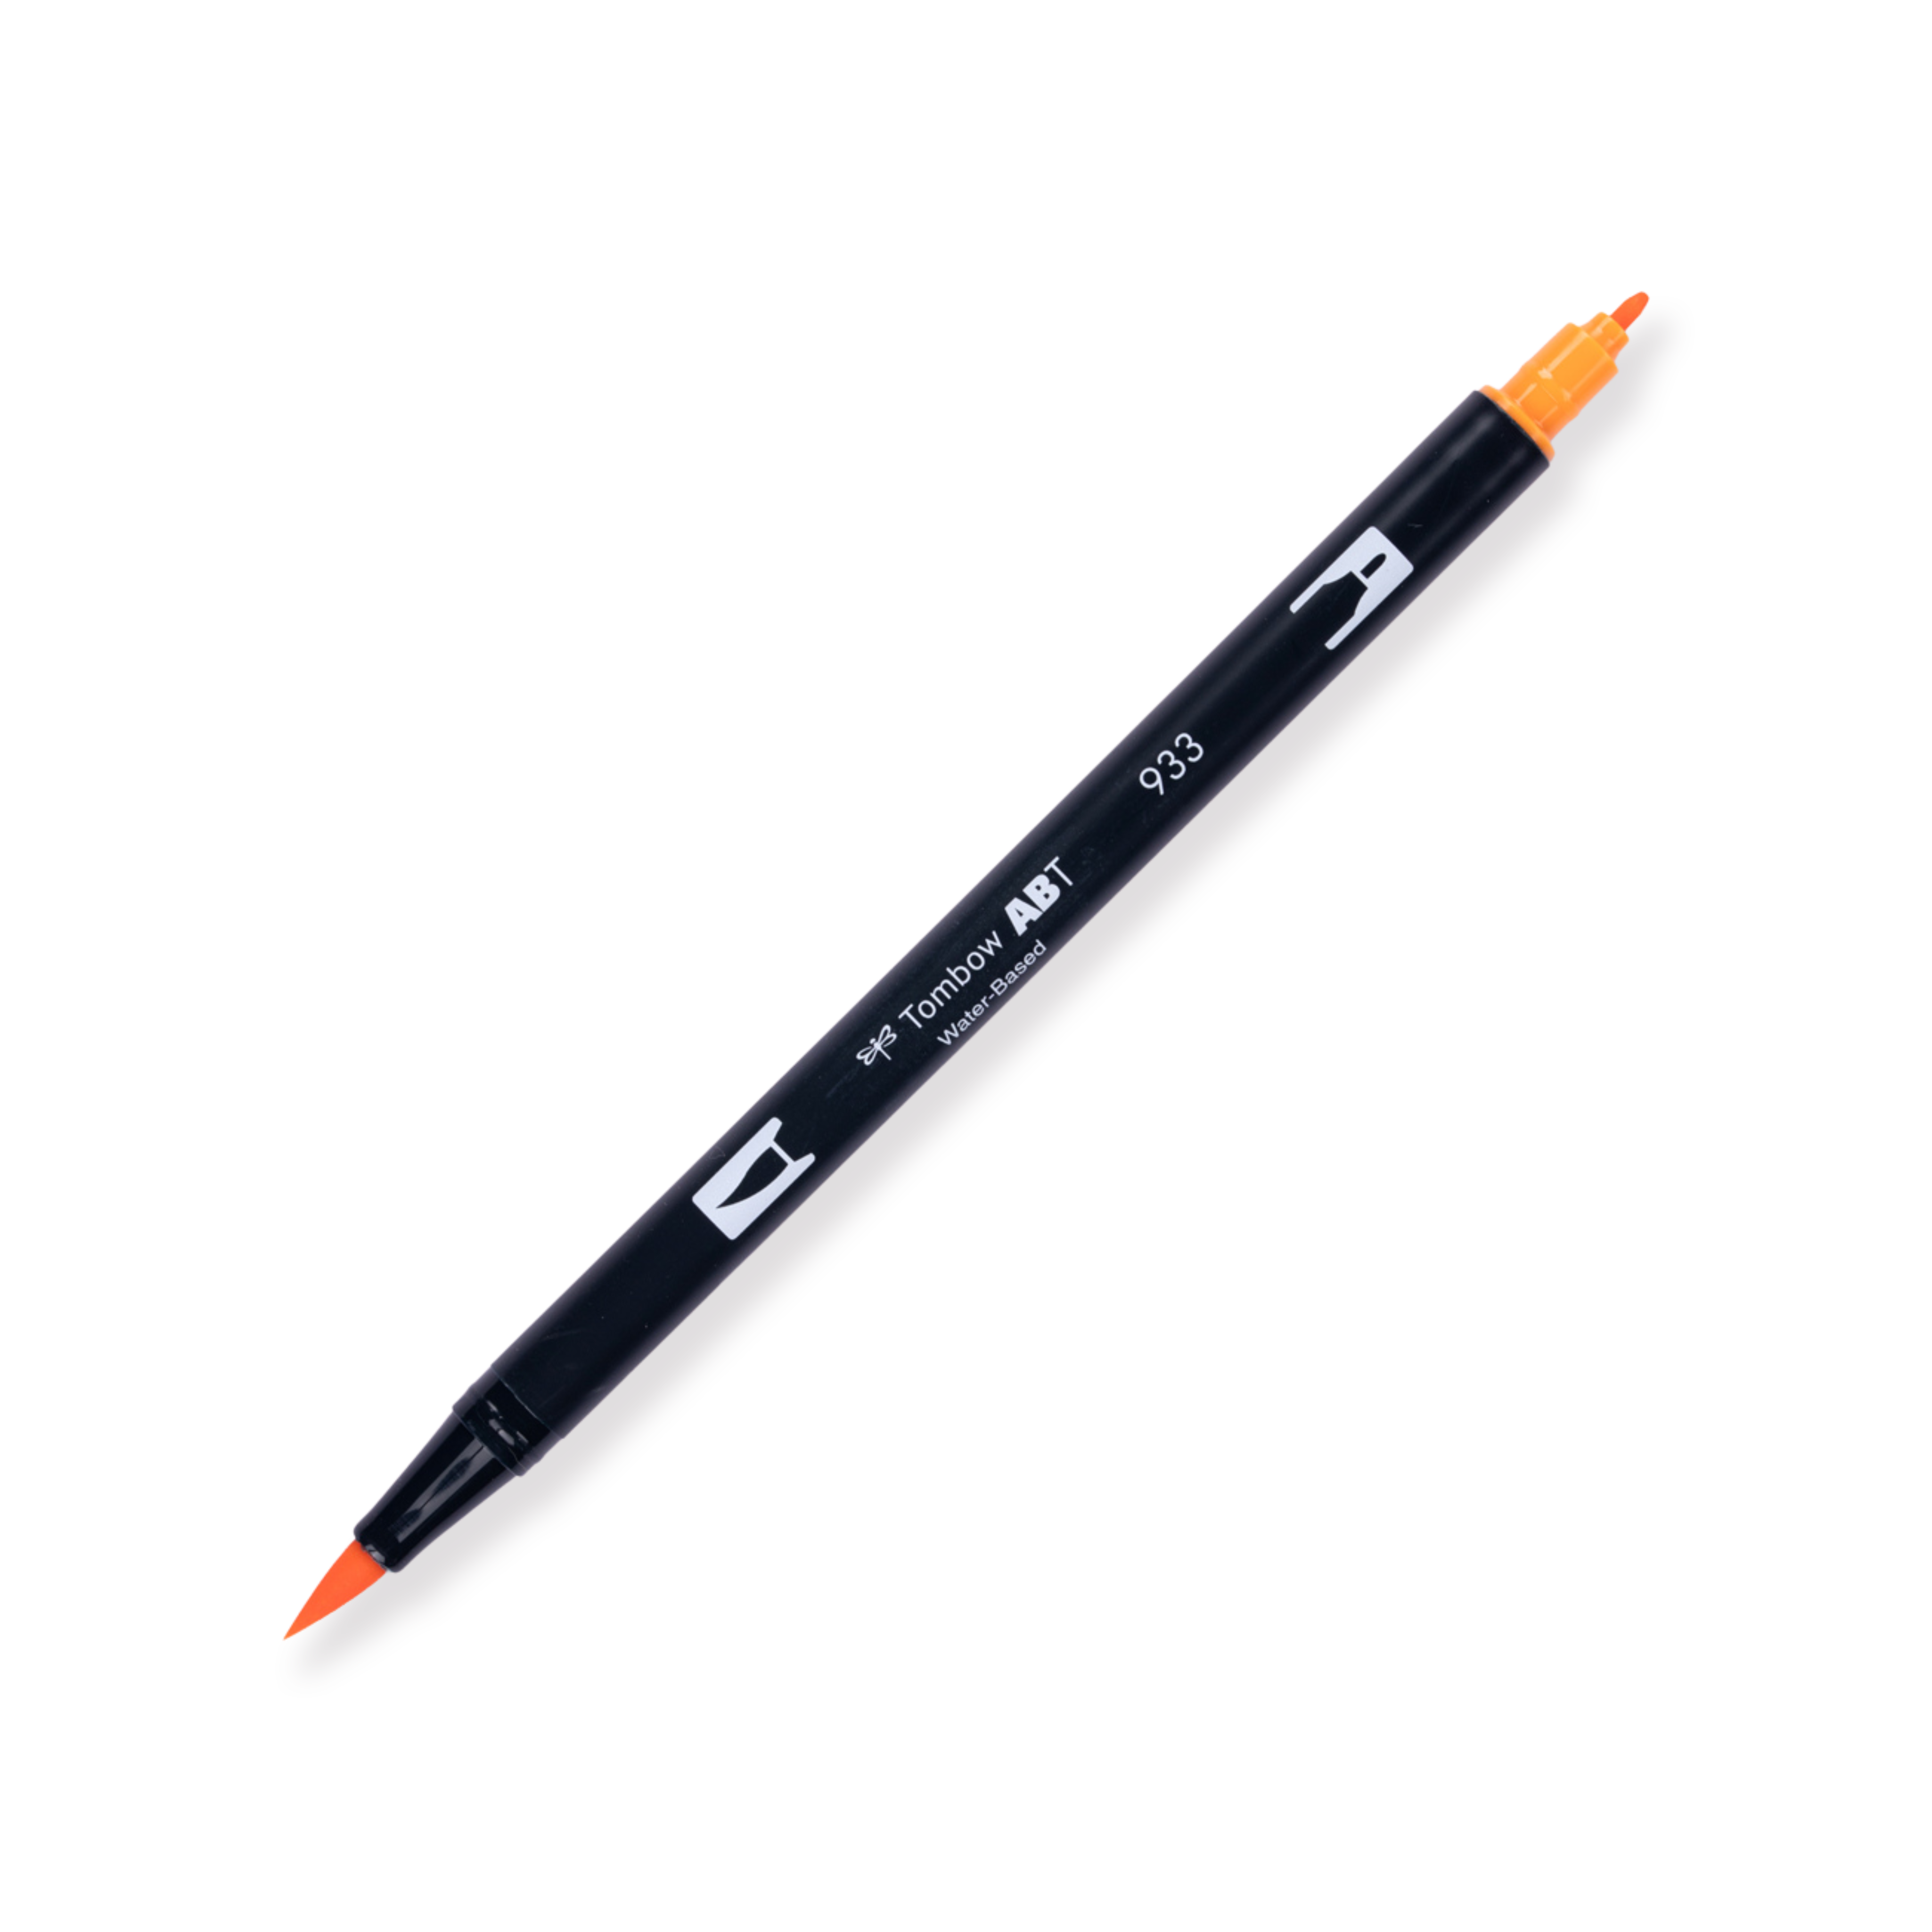 Rotulador de doble punta Tombow - 933 - Naranja